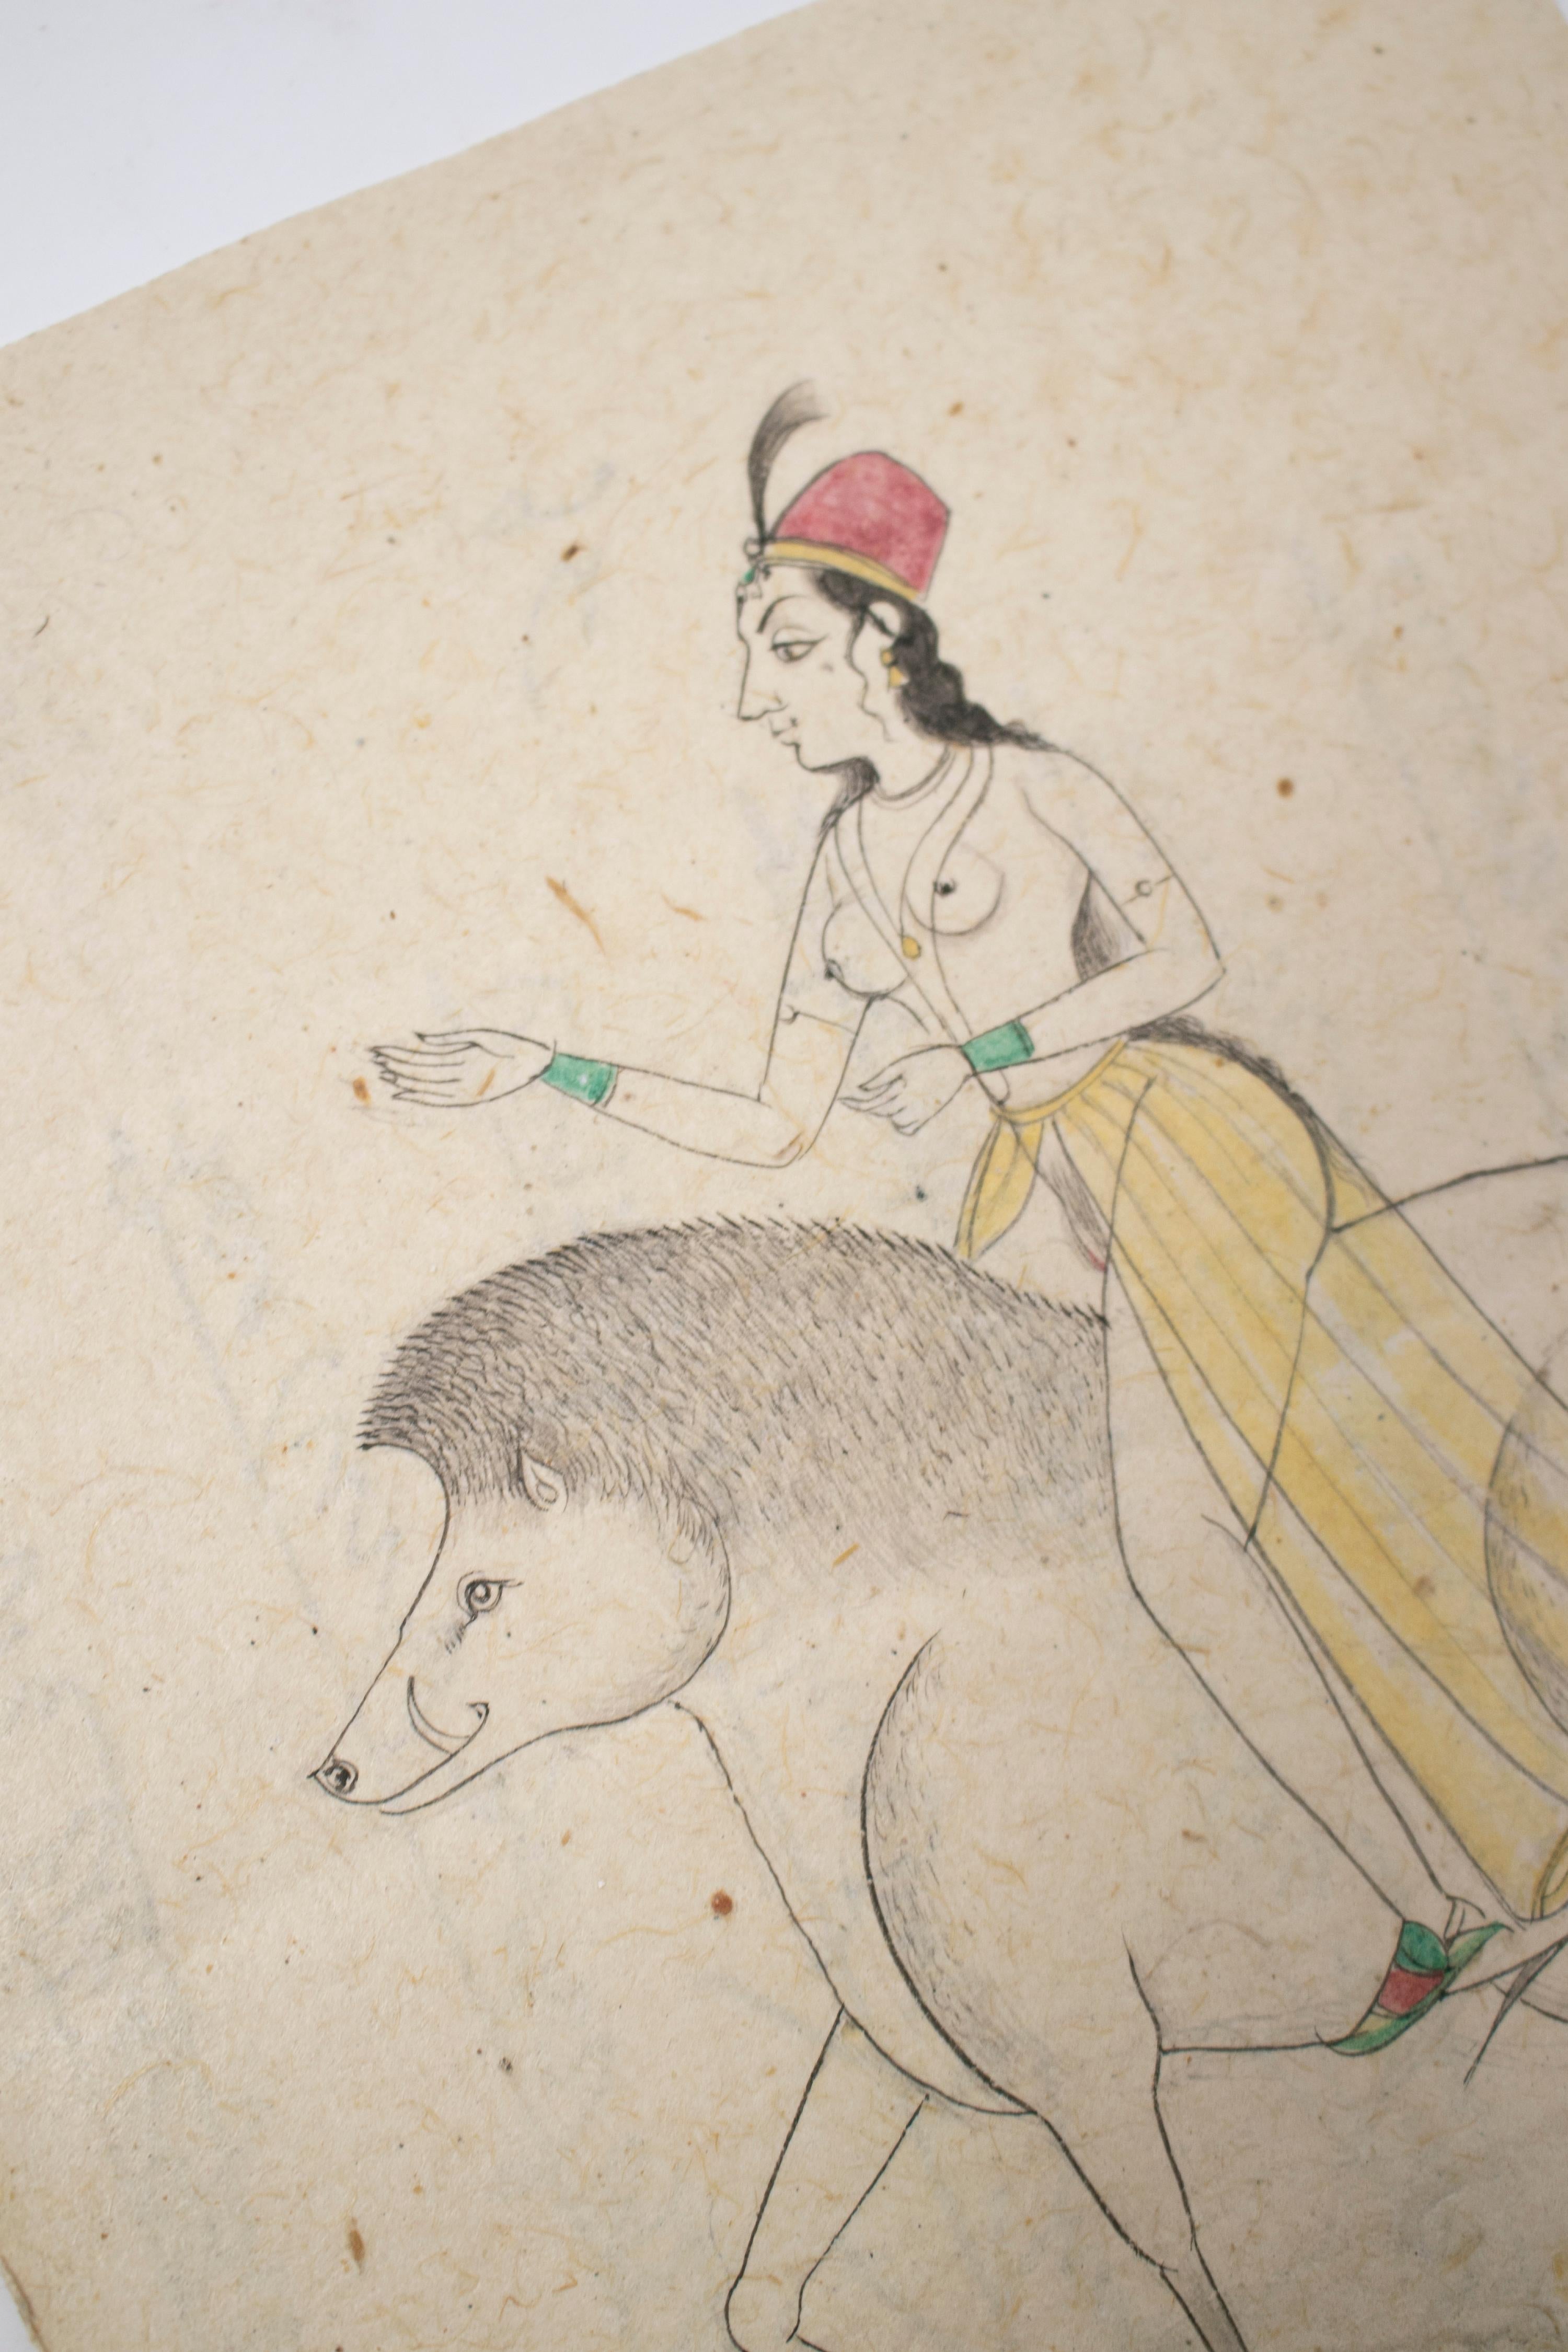 dessin indien des années 1970 sur papier représentant une femme chevauchant un tapir. Fait partie d'une grande collection privée.